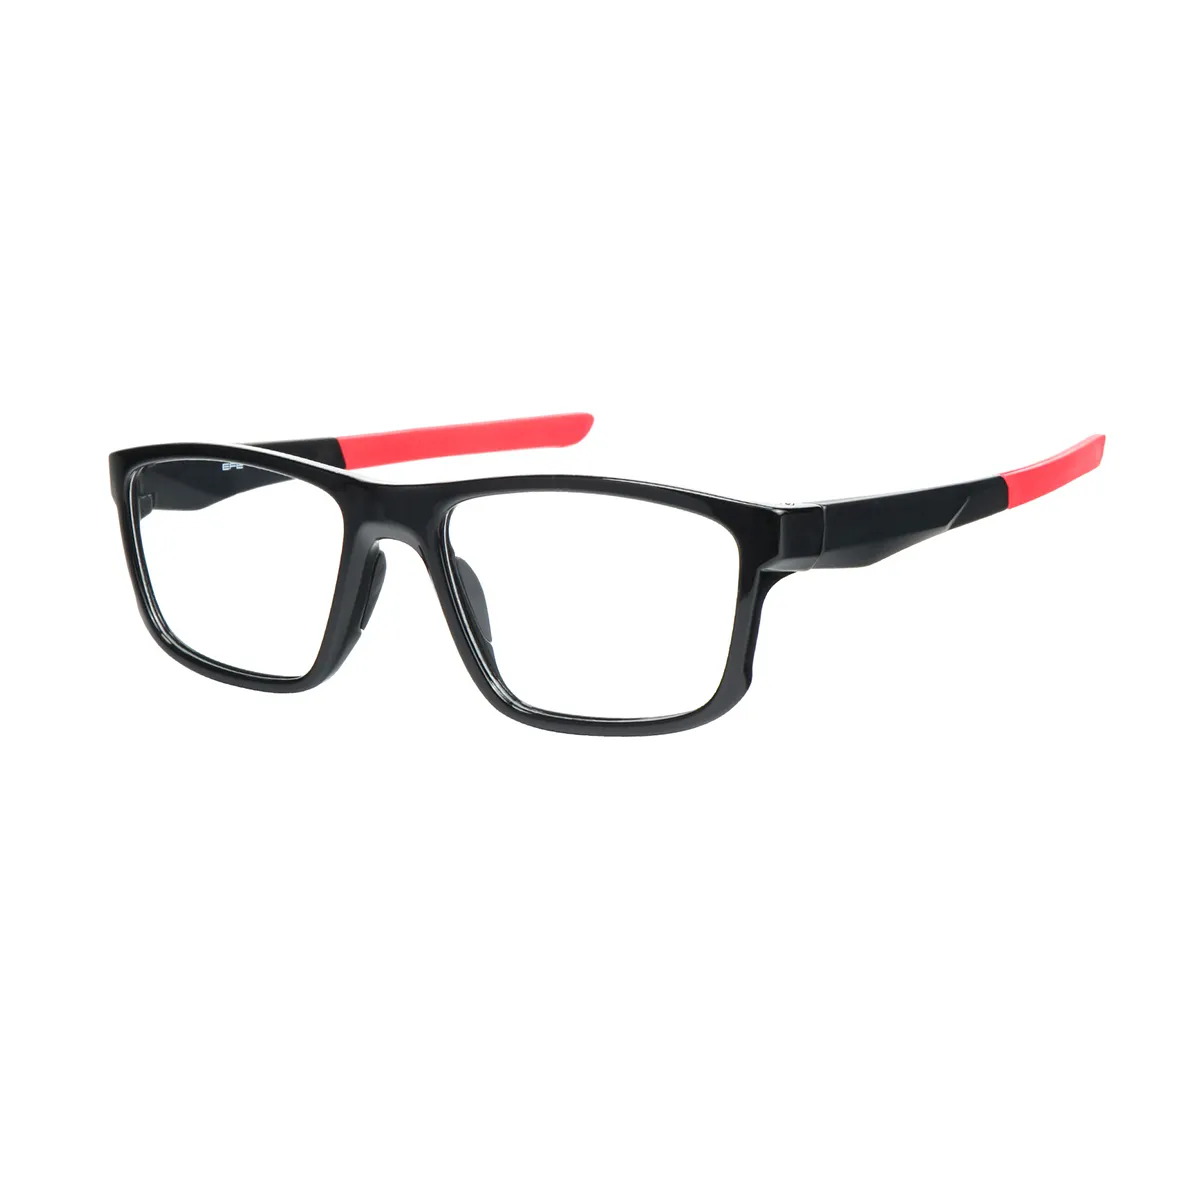 Sports Rectangle Black-Orange Eyeglasses for Men